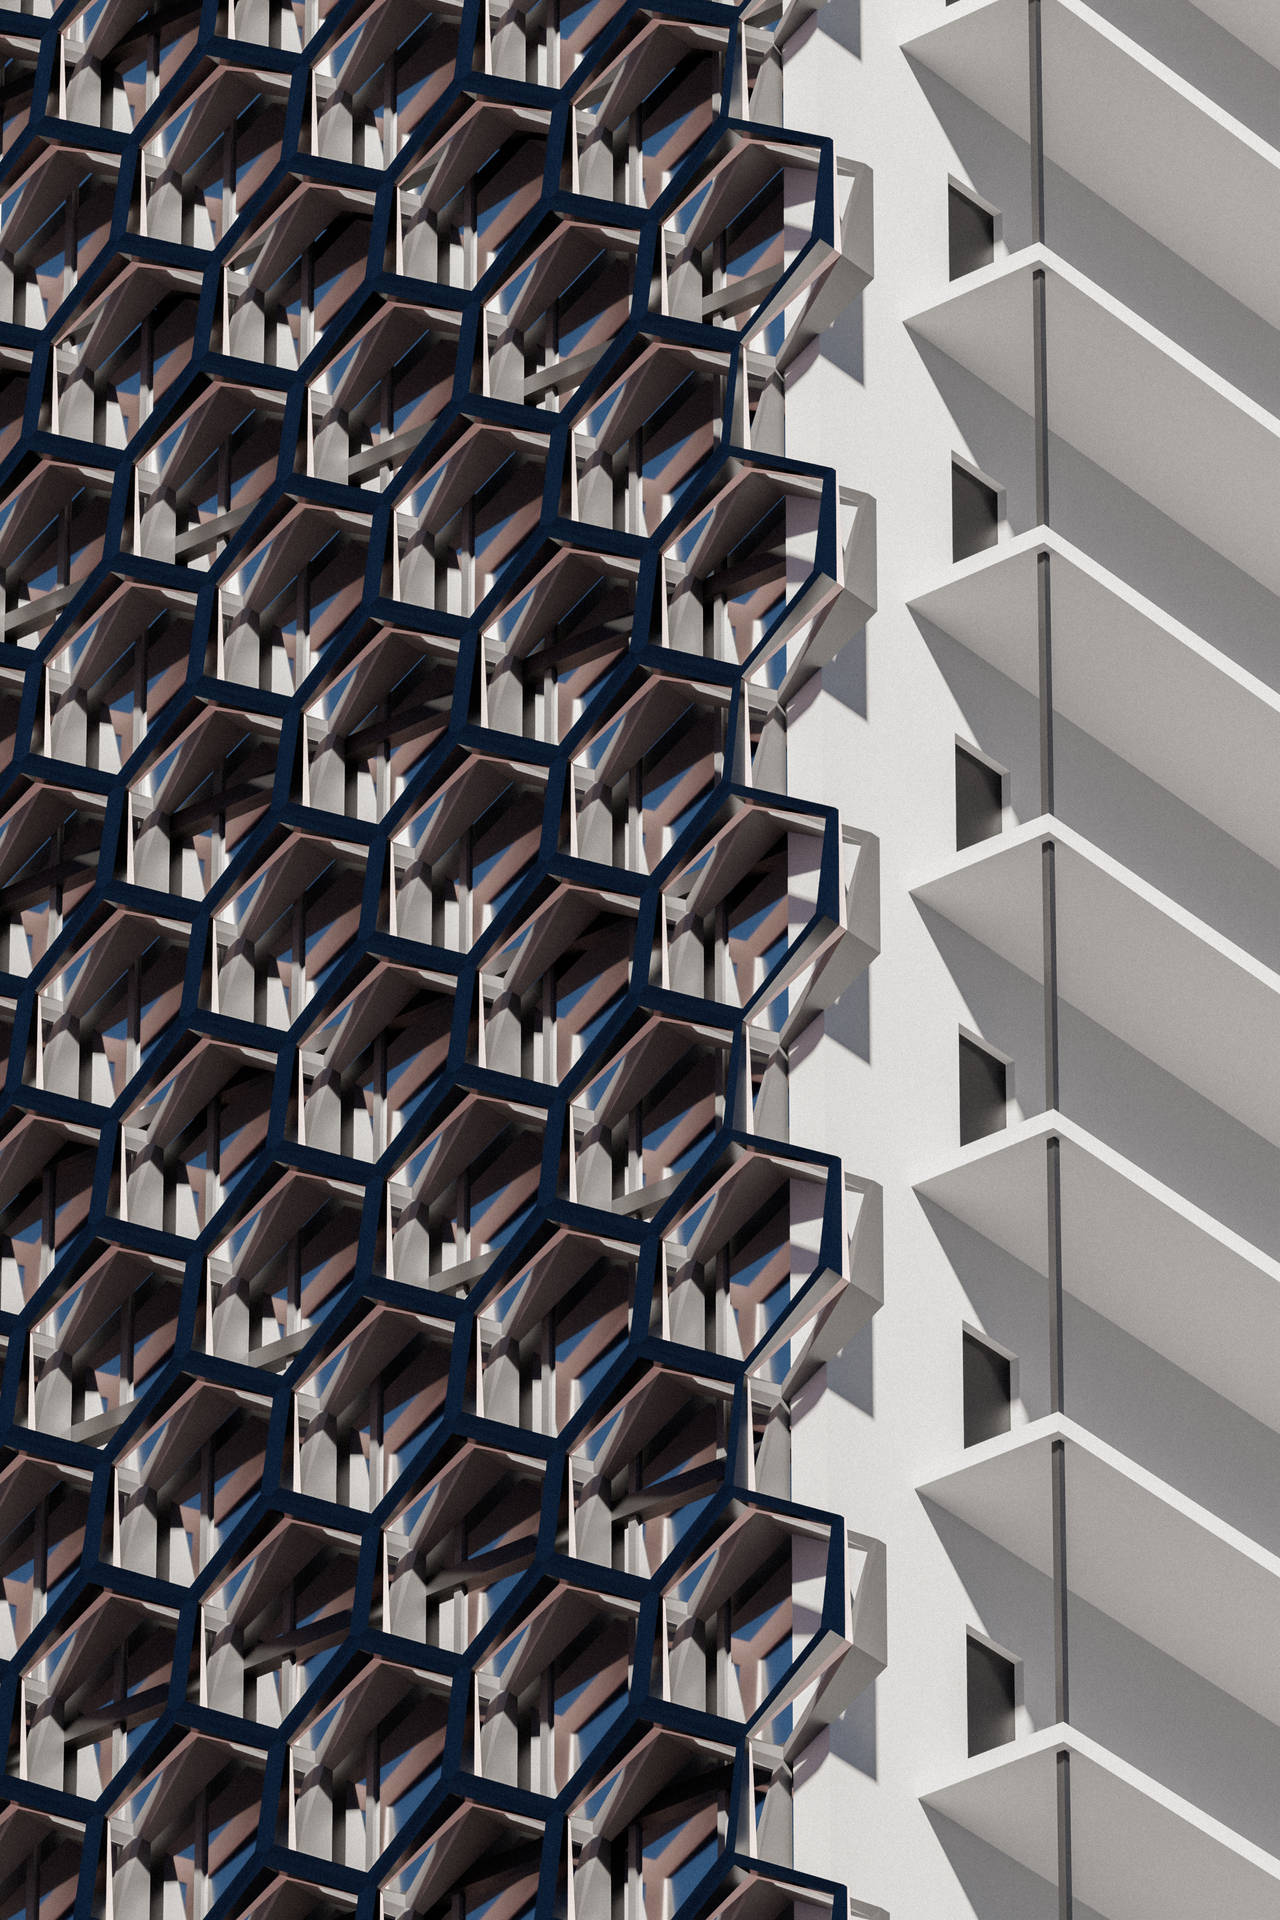 Hexagon Building Facade Mobile 3d Wallpaper